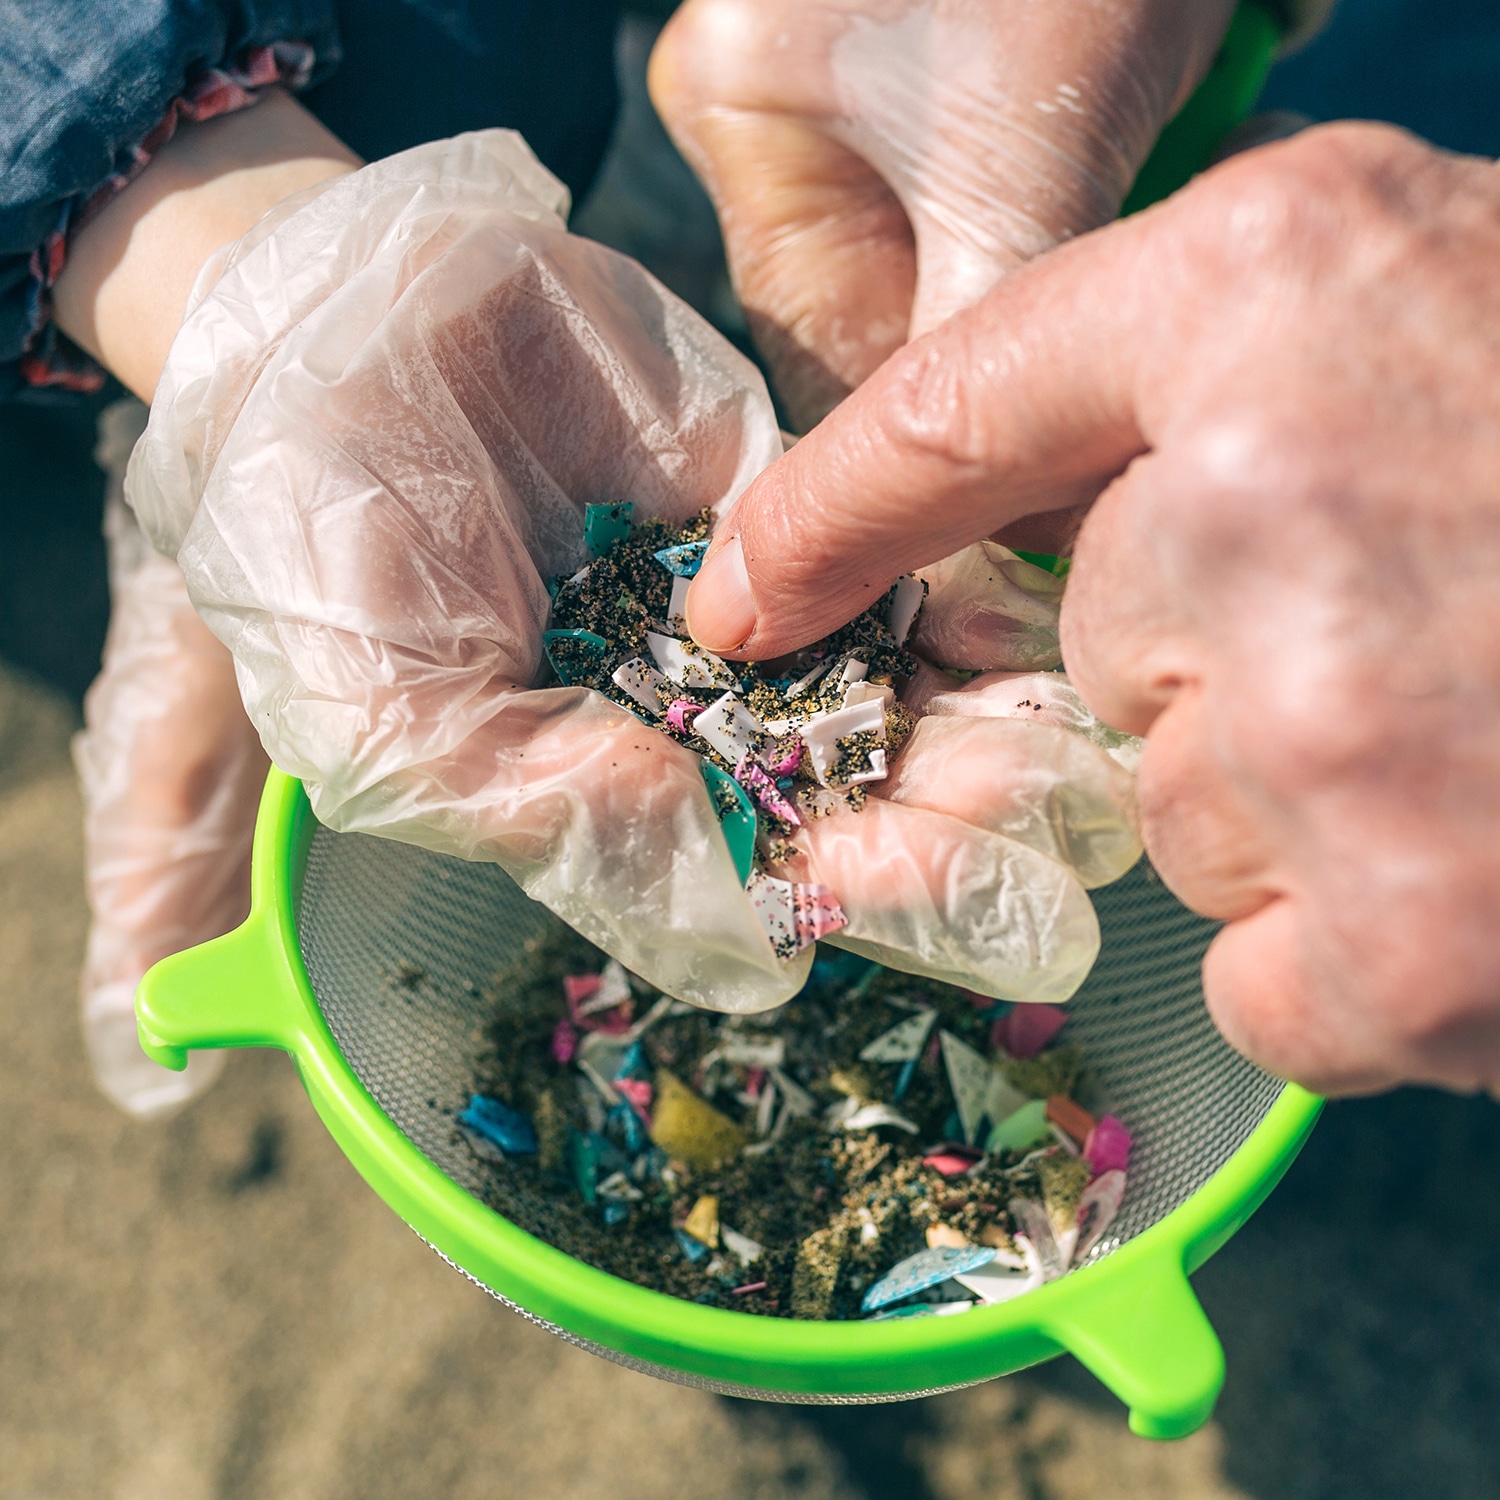 In einer offenen Hand sind kleine Plastikteile und Schmutz zu sehen. Unter der Hand ist ein Sieb, in welchem noch mehr Sand und mehr Plastikteile liegen.